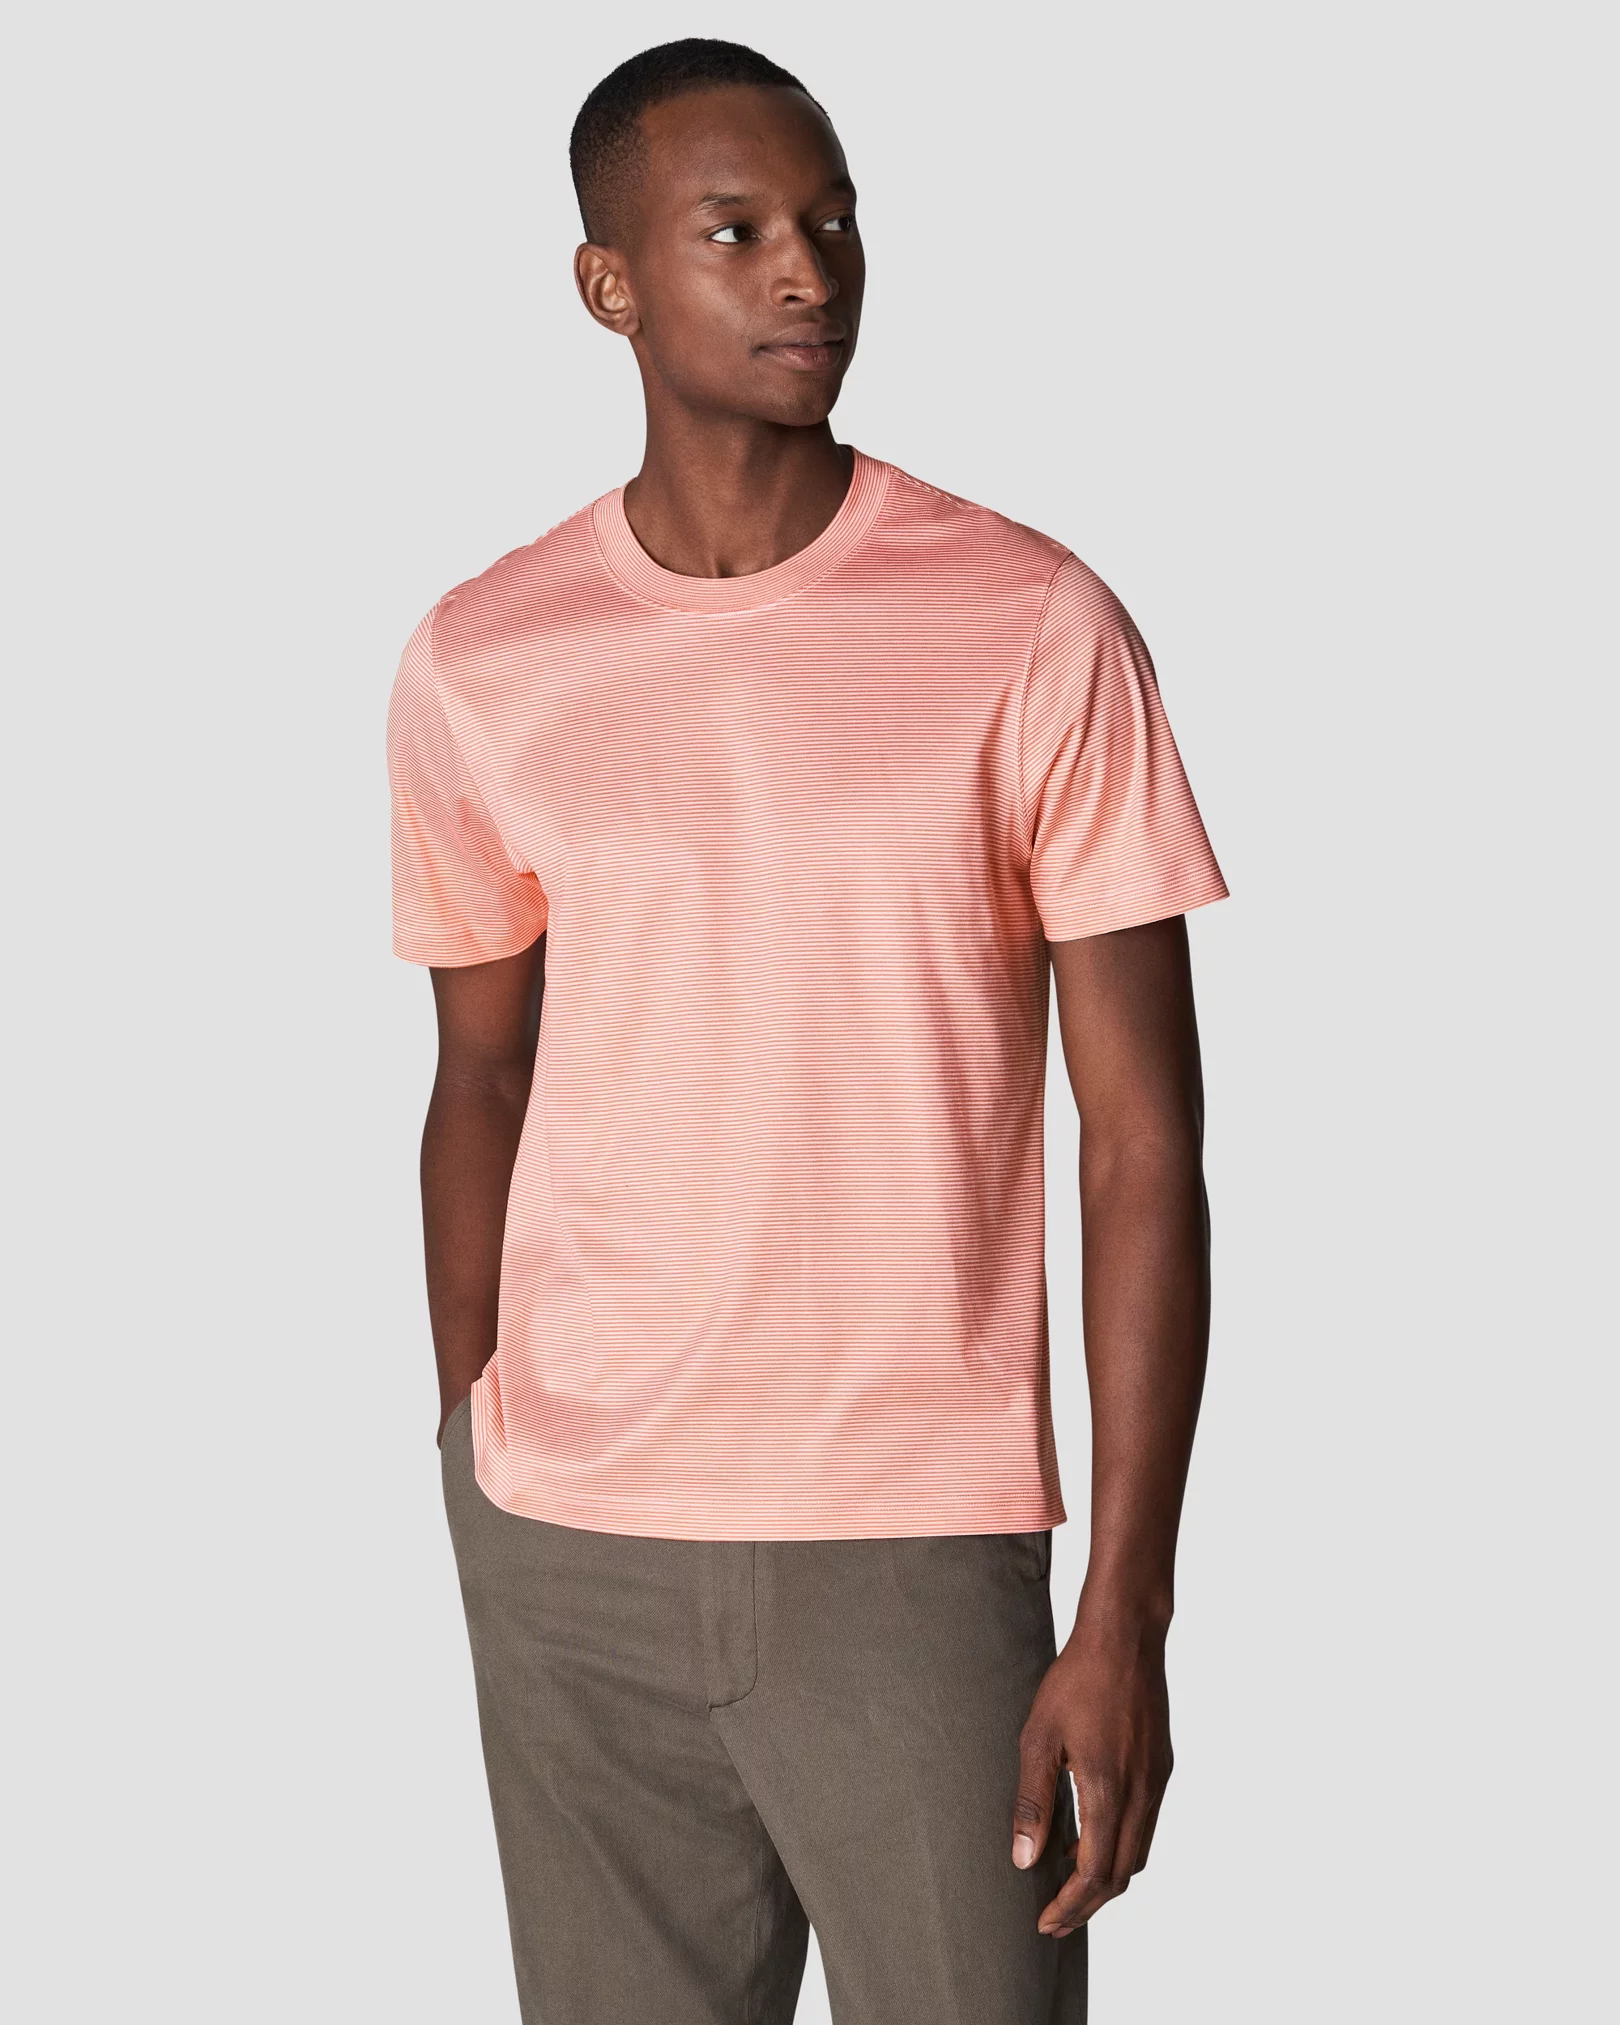 Eton - pink interlock t shirt